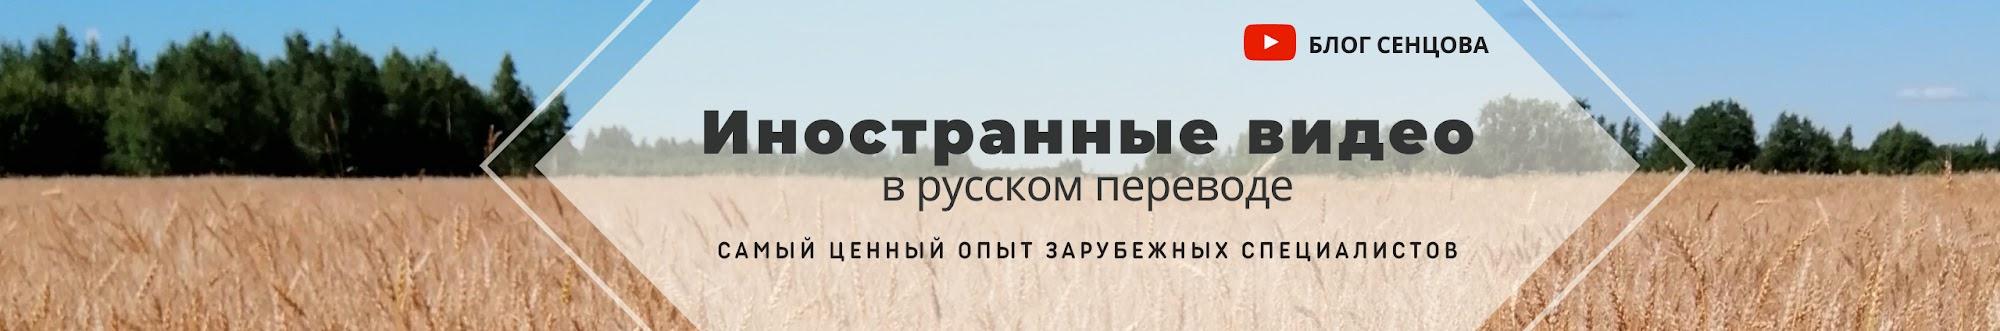 Блог Сенцова